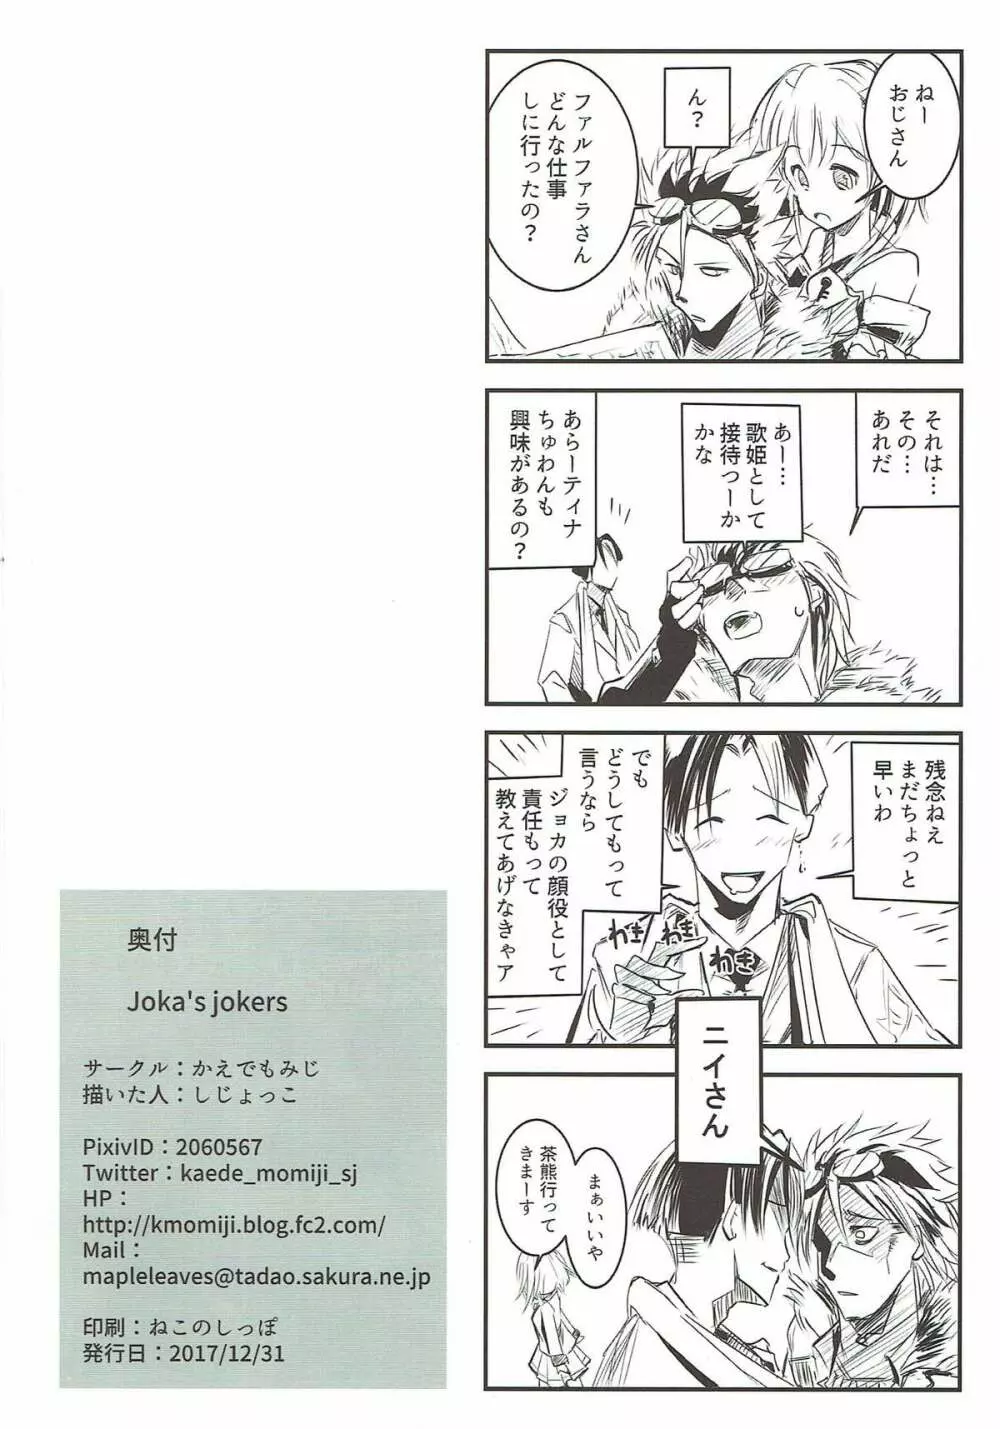 Joka’s jokers 25ページ